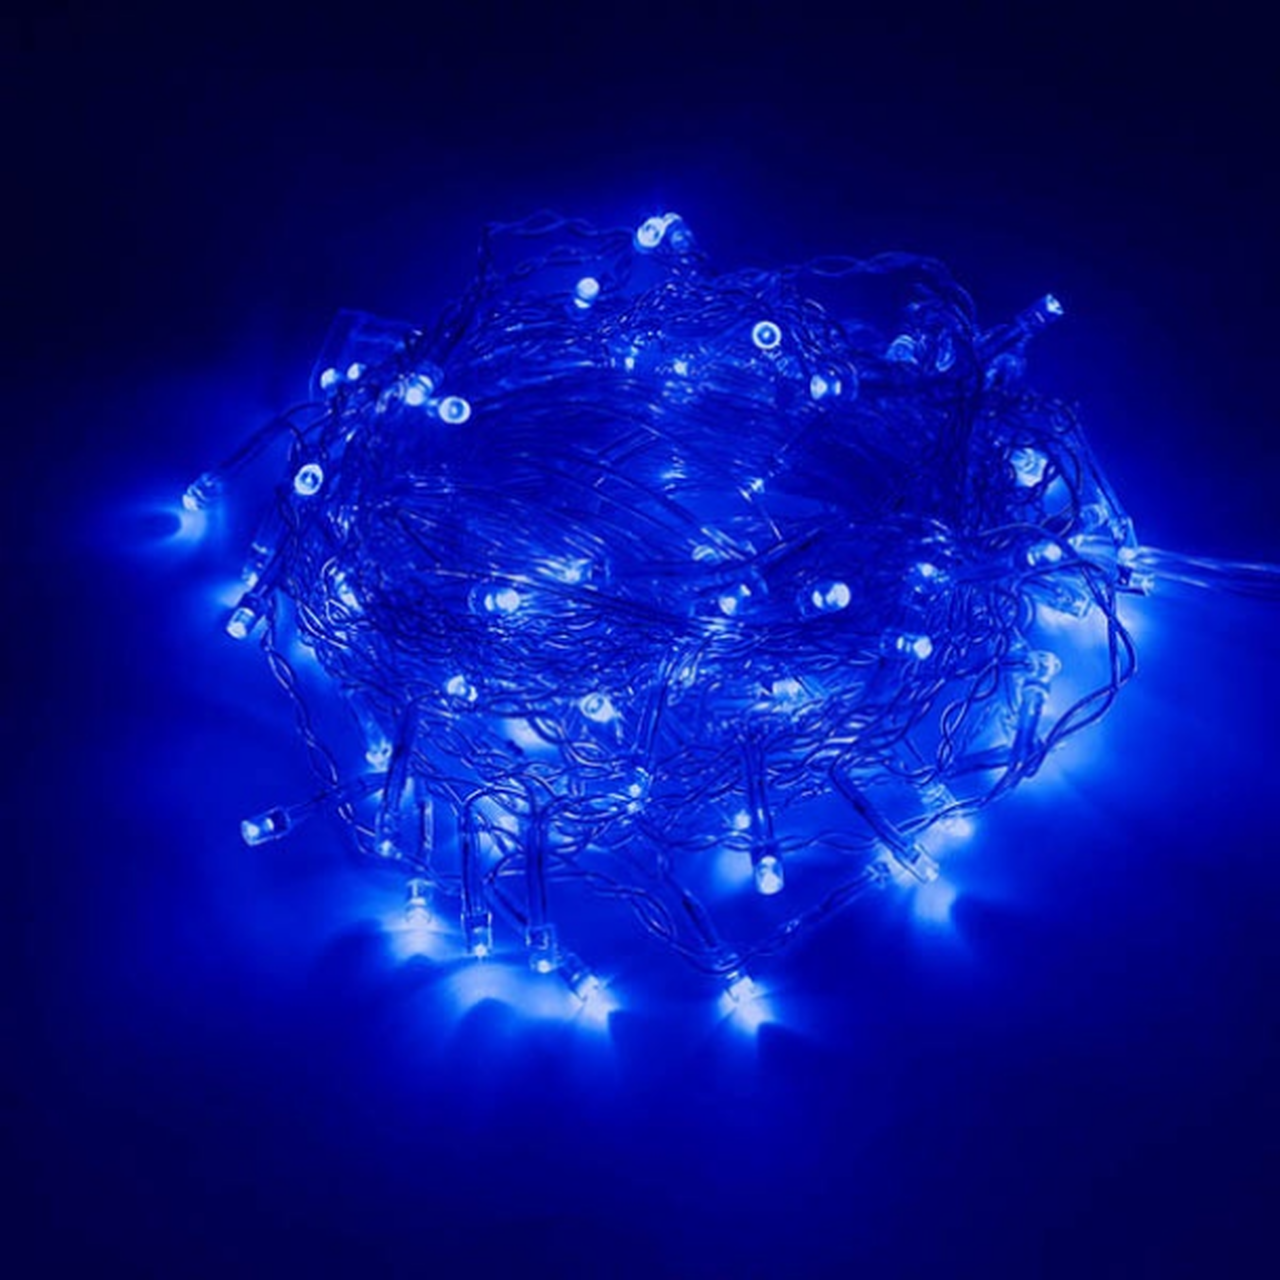 3x3 Mètres Rideaux lumineux à Lumière LED, Couleur Bleu avec effet cascade/neige Imperméable